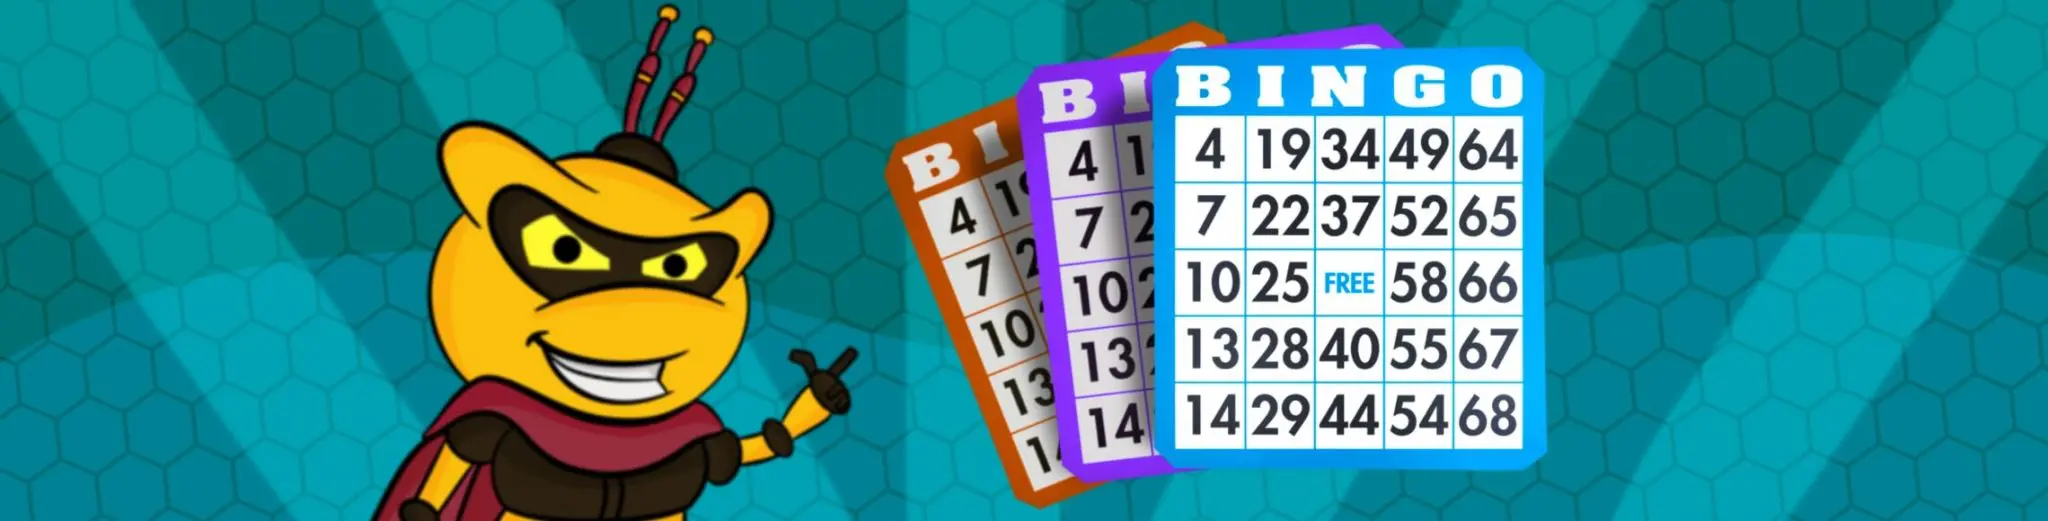 Sitios de Bingo